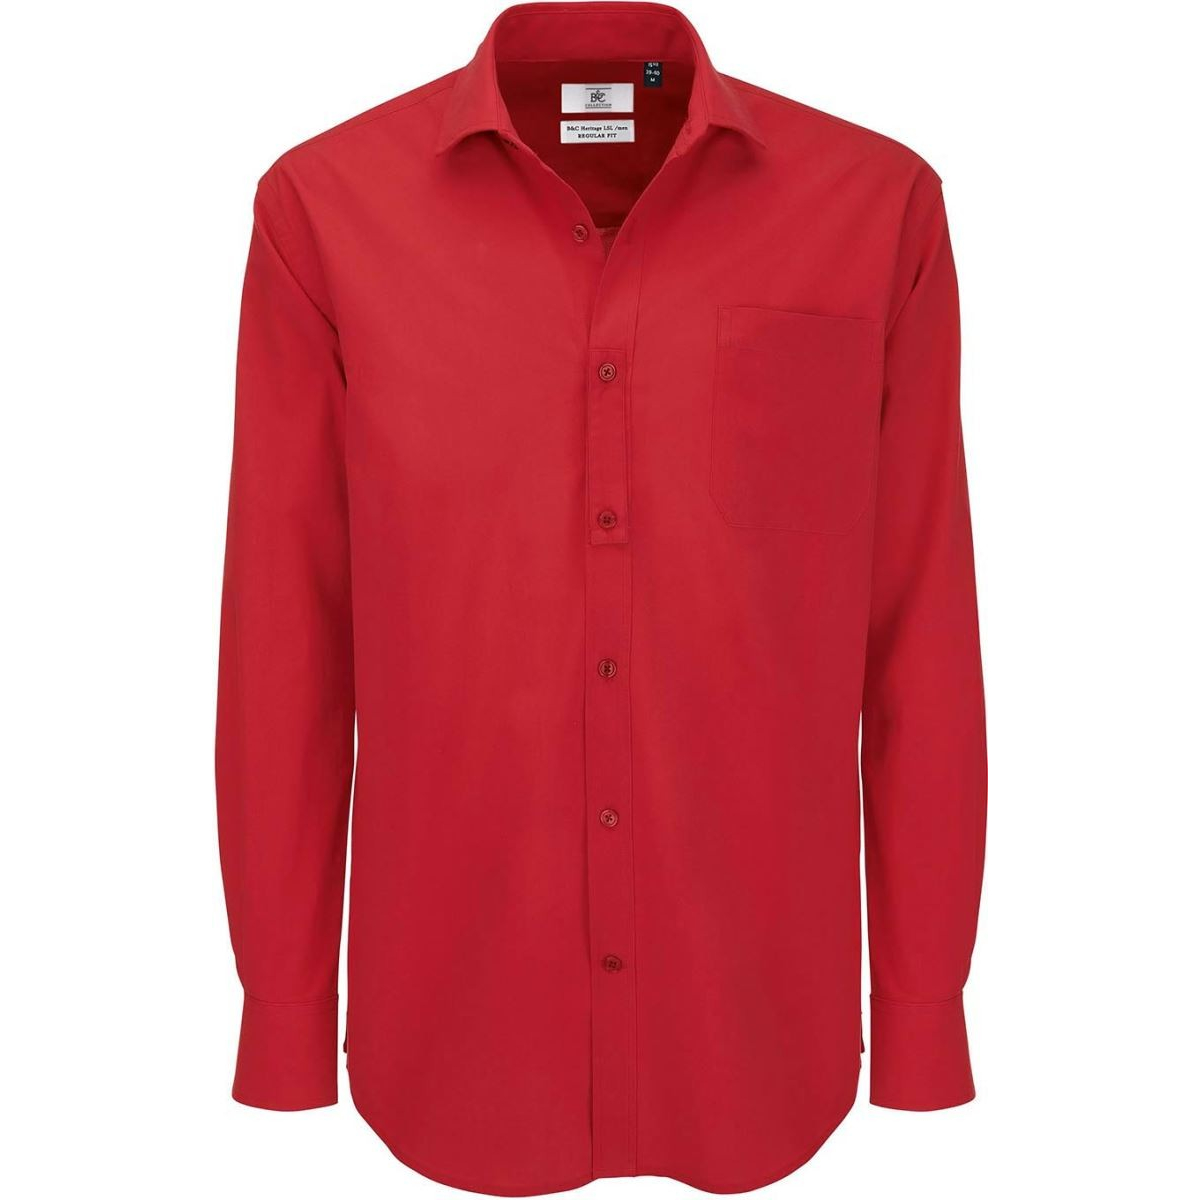 Pánská popelínová košile B&C Heritage s dlouhým rukávem - červená, M